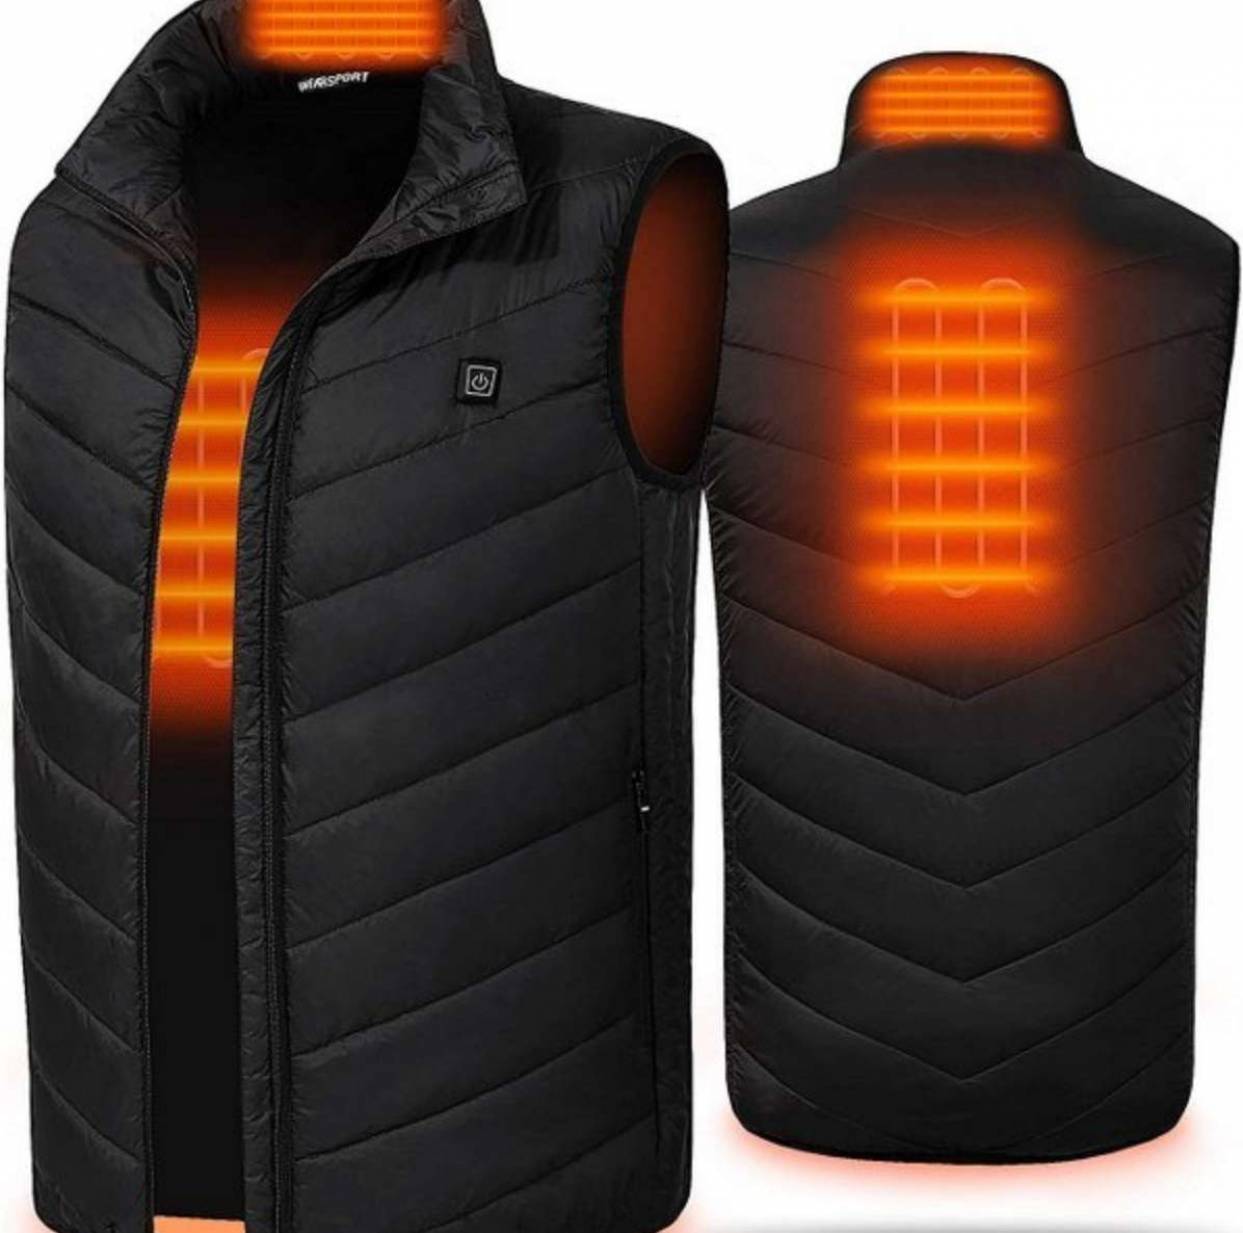 Heated Jacket Vs Heated Vest